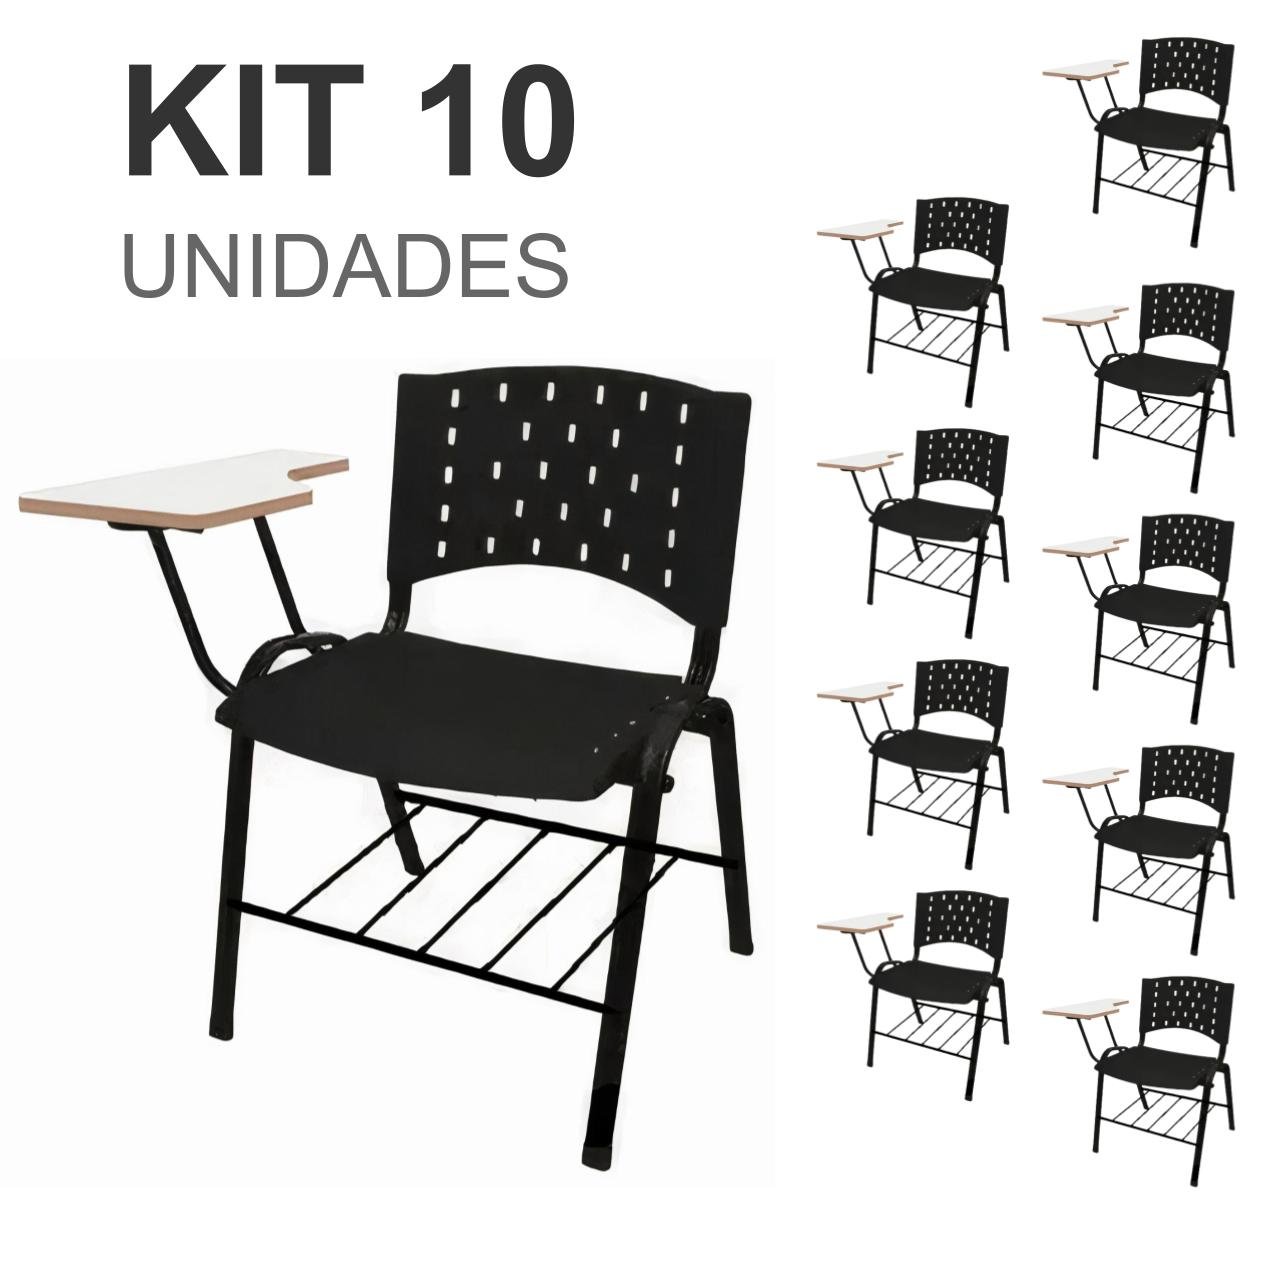 KIT 10 Cadeiras Universitárias c/ prancheta com porta livros - 32011 - 1